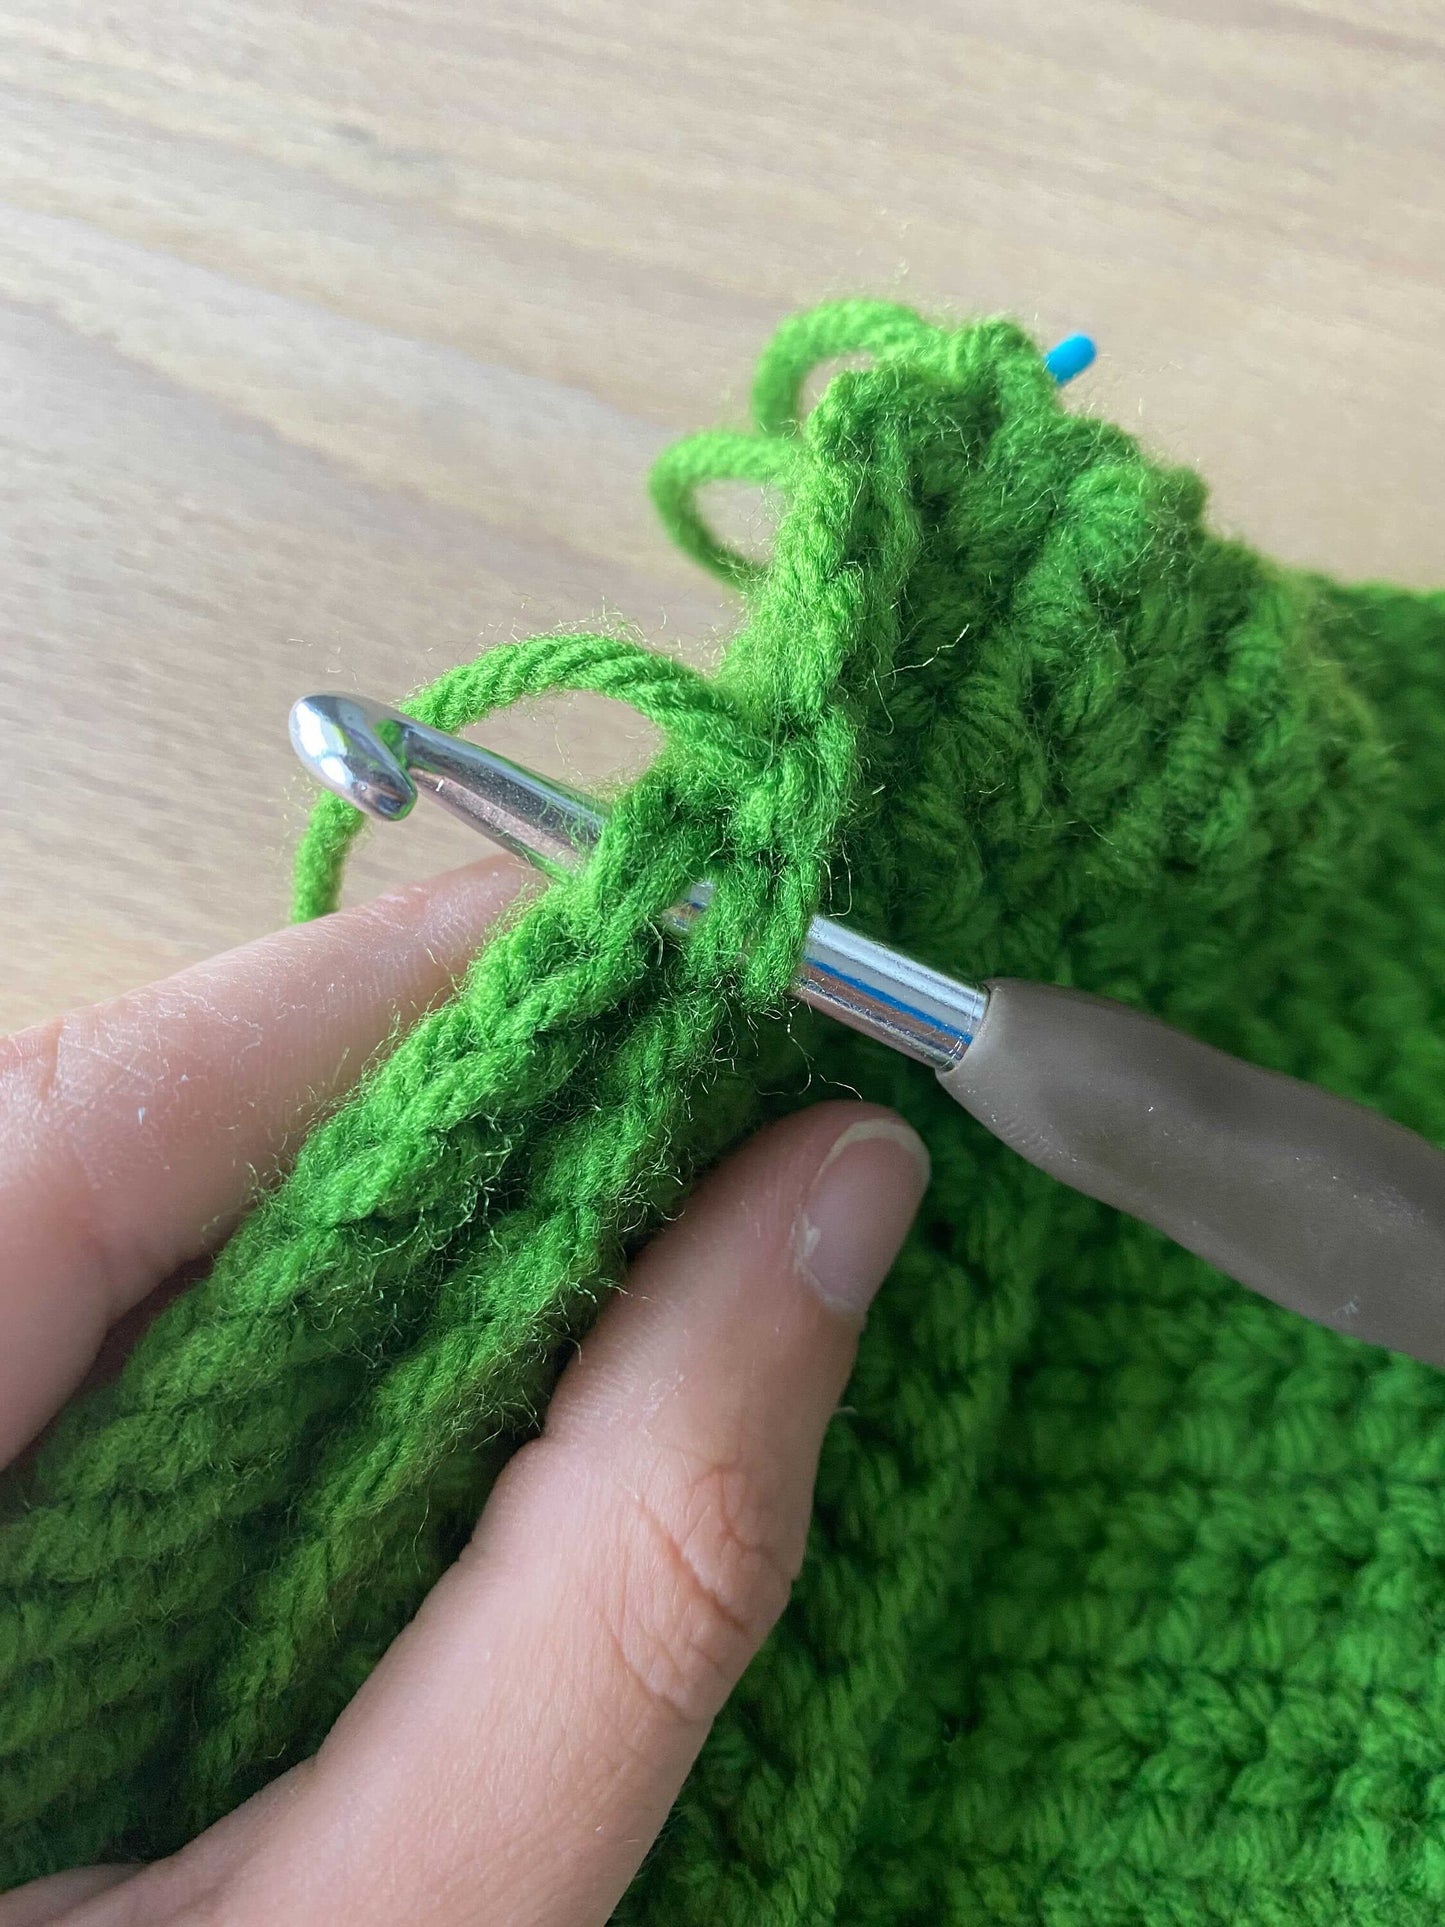 Crochet Frog Purse Pattern